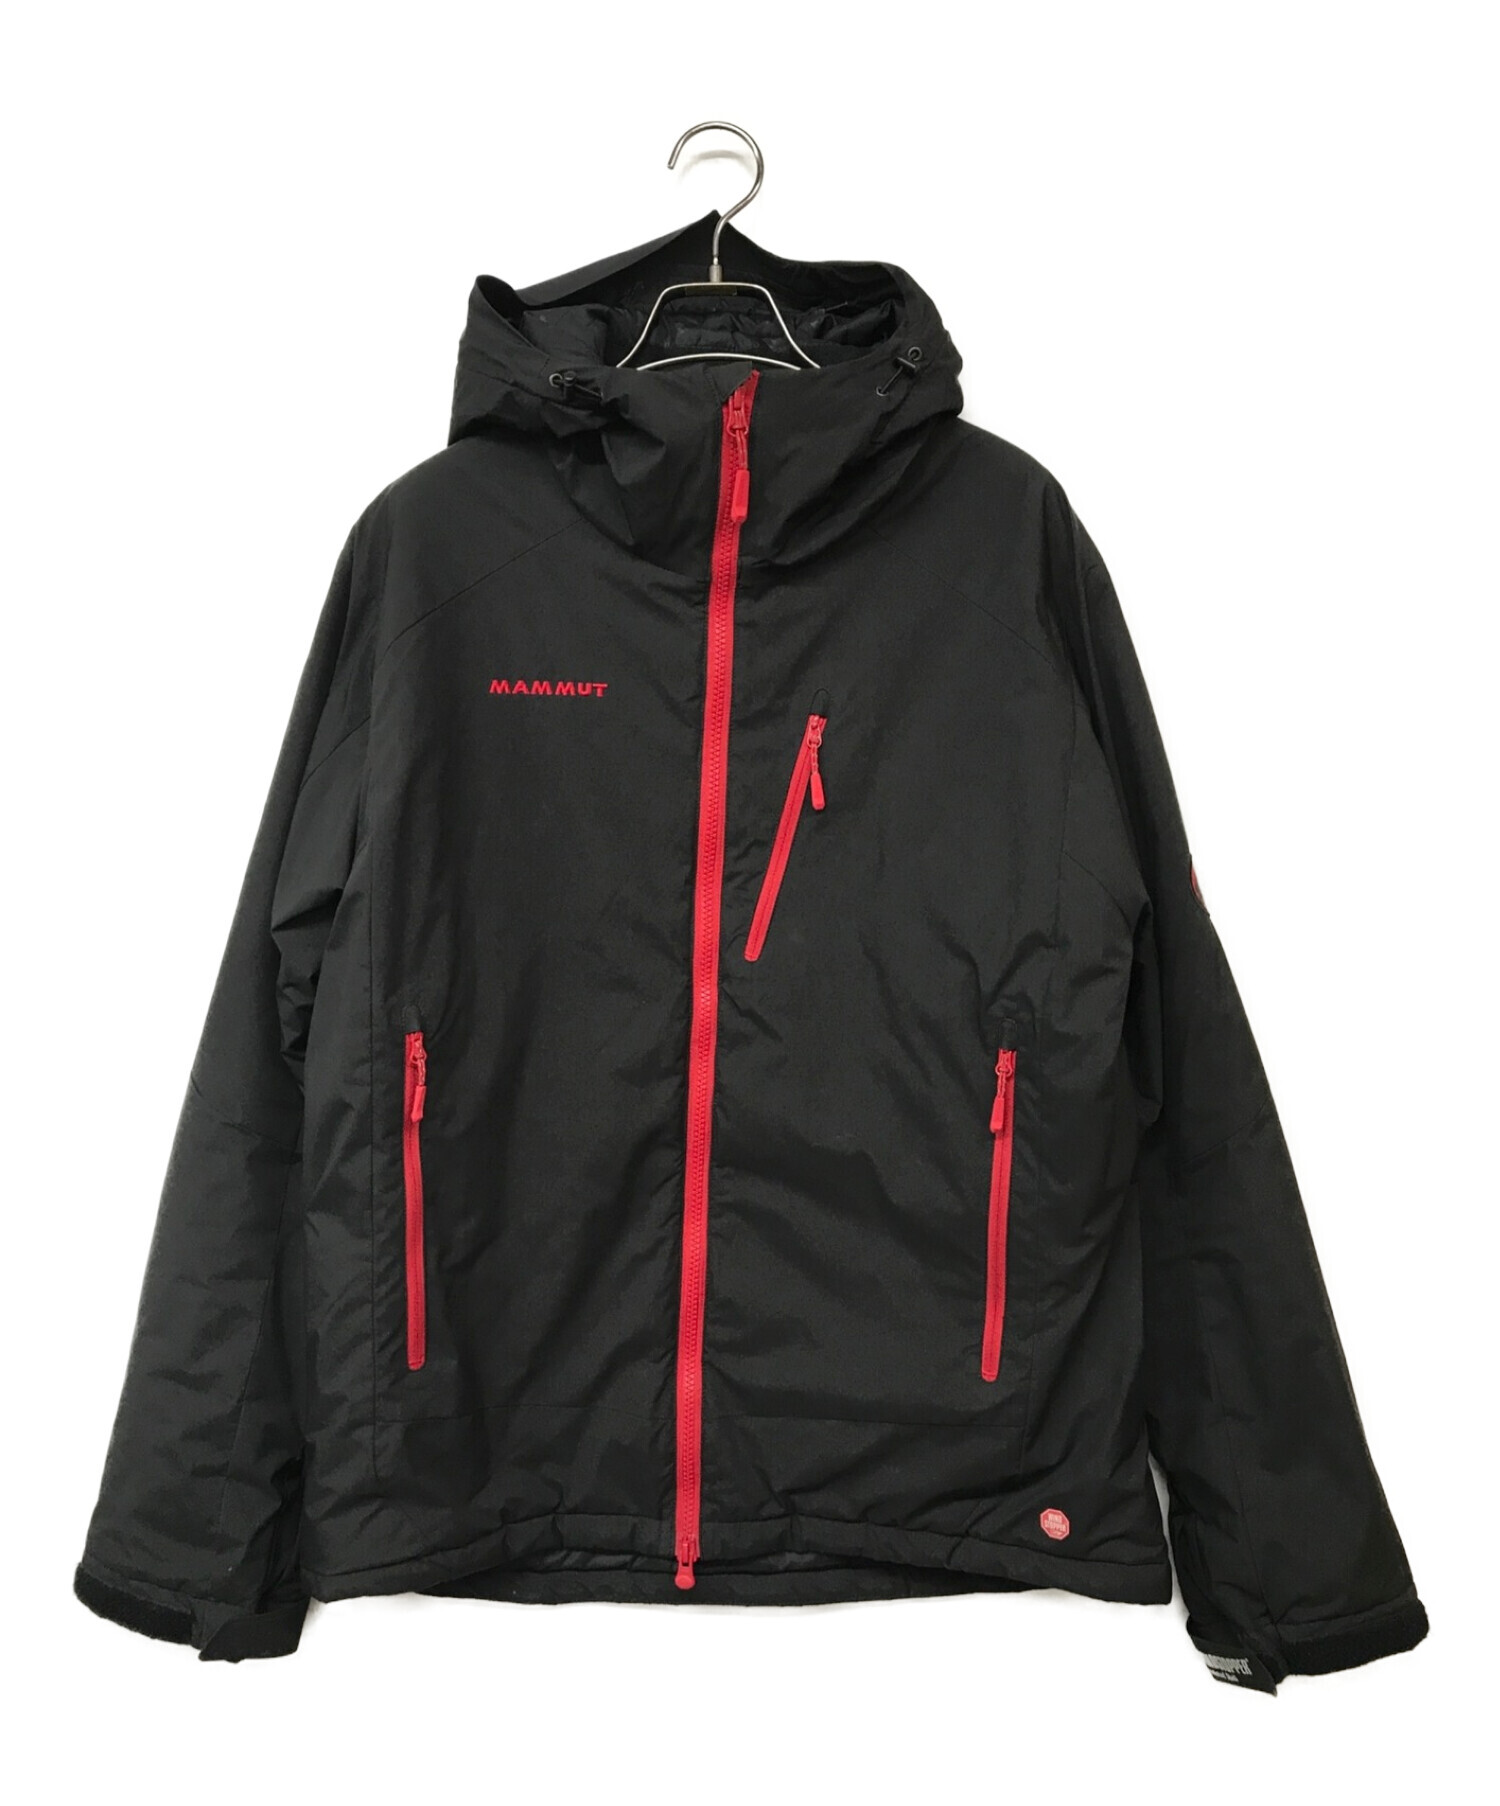 MAMMUT (マムート) Winter Trail Jacket/ウィンタートレイルジャケット ブラック×レッド サイズ:L